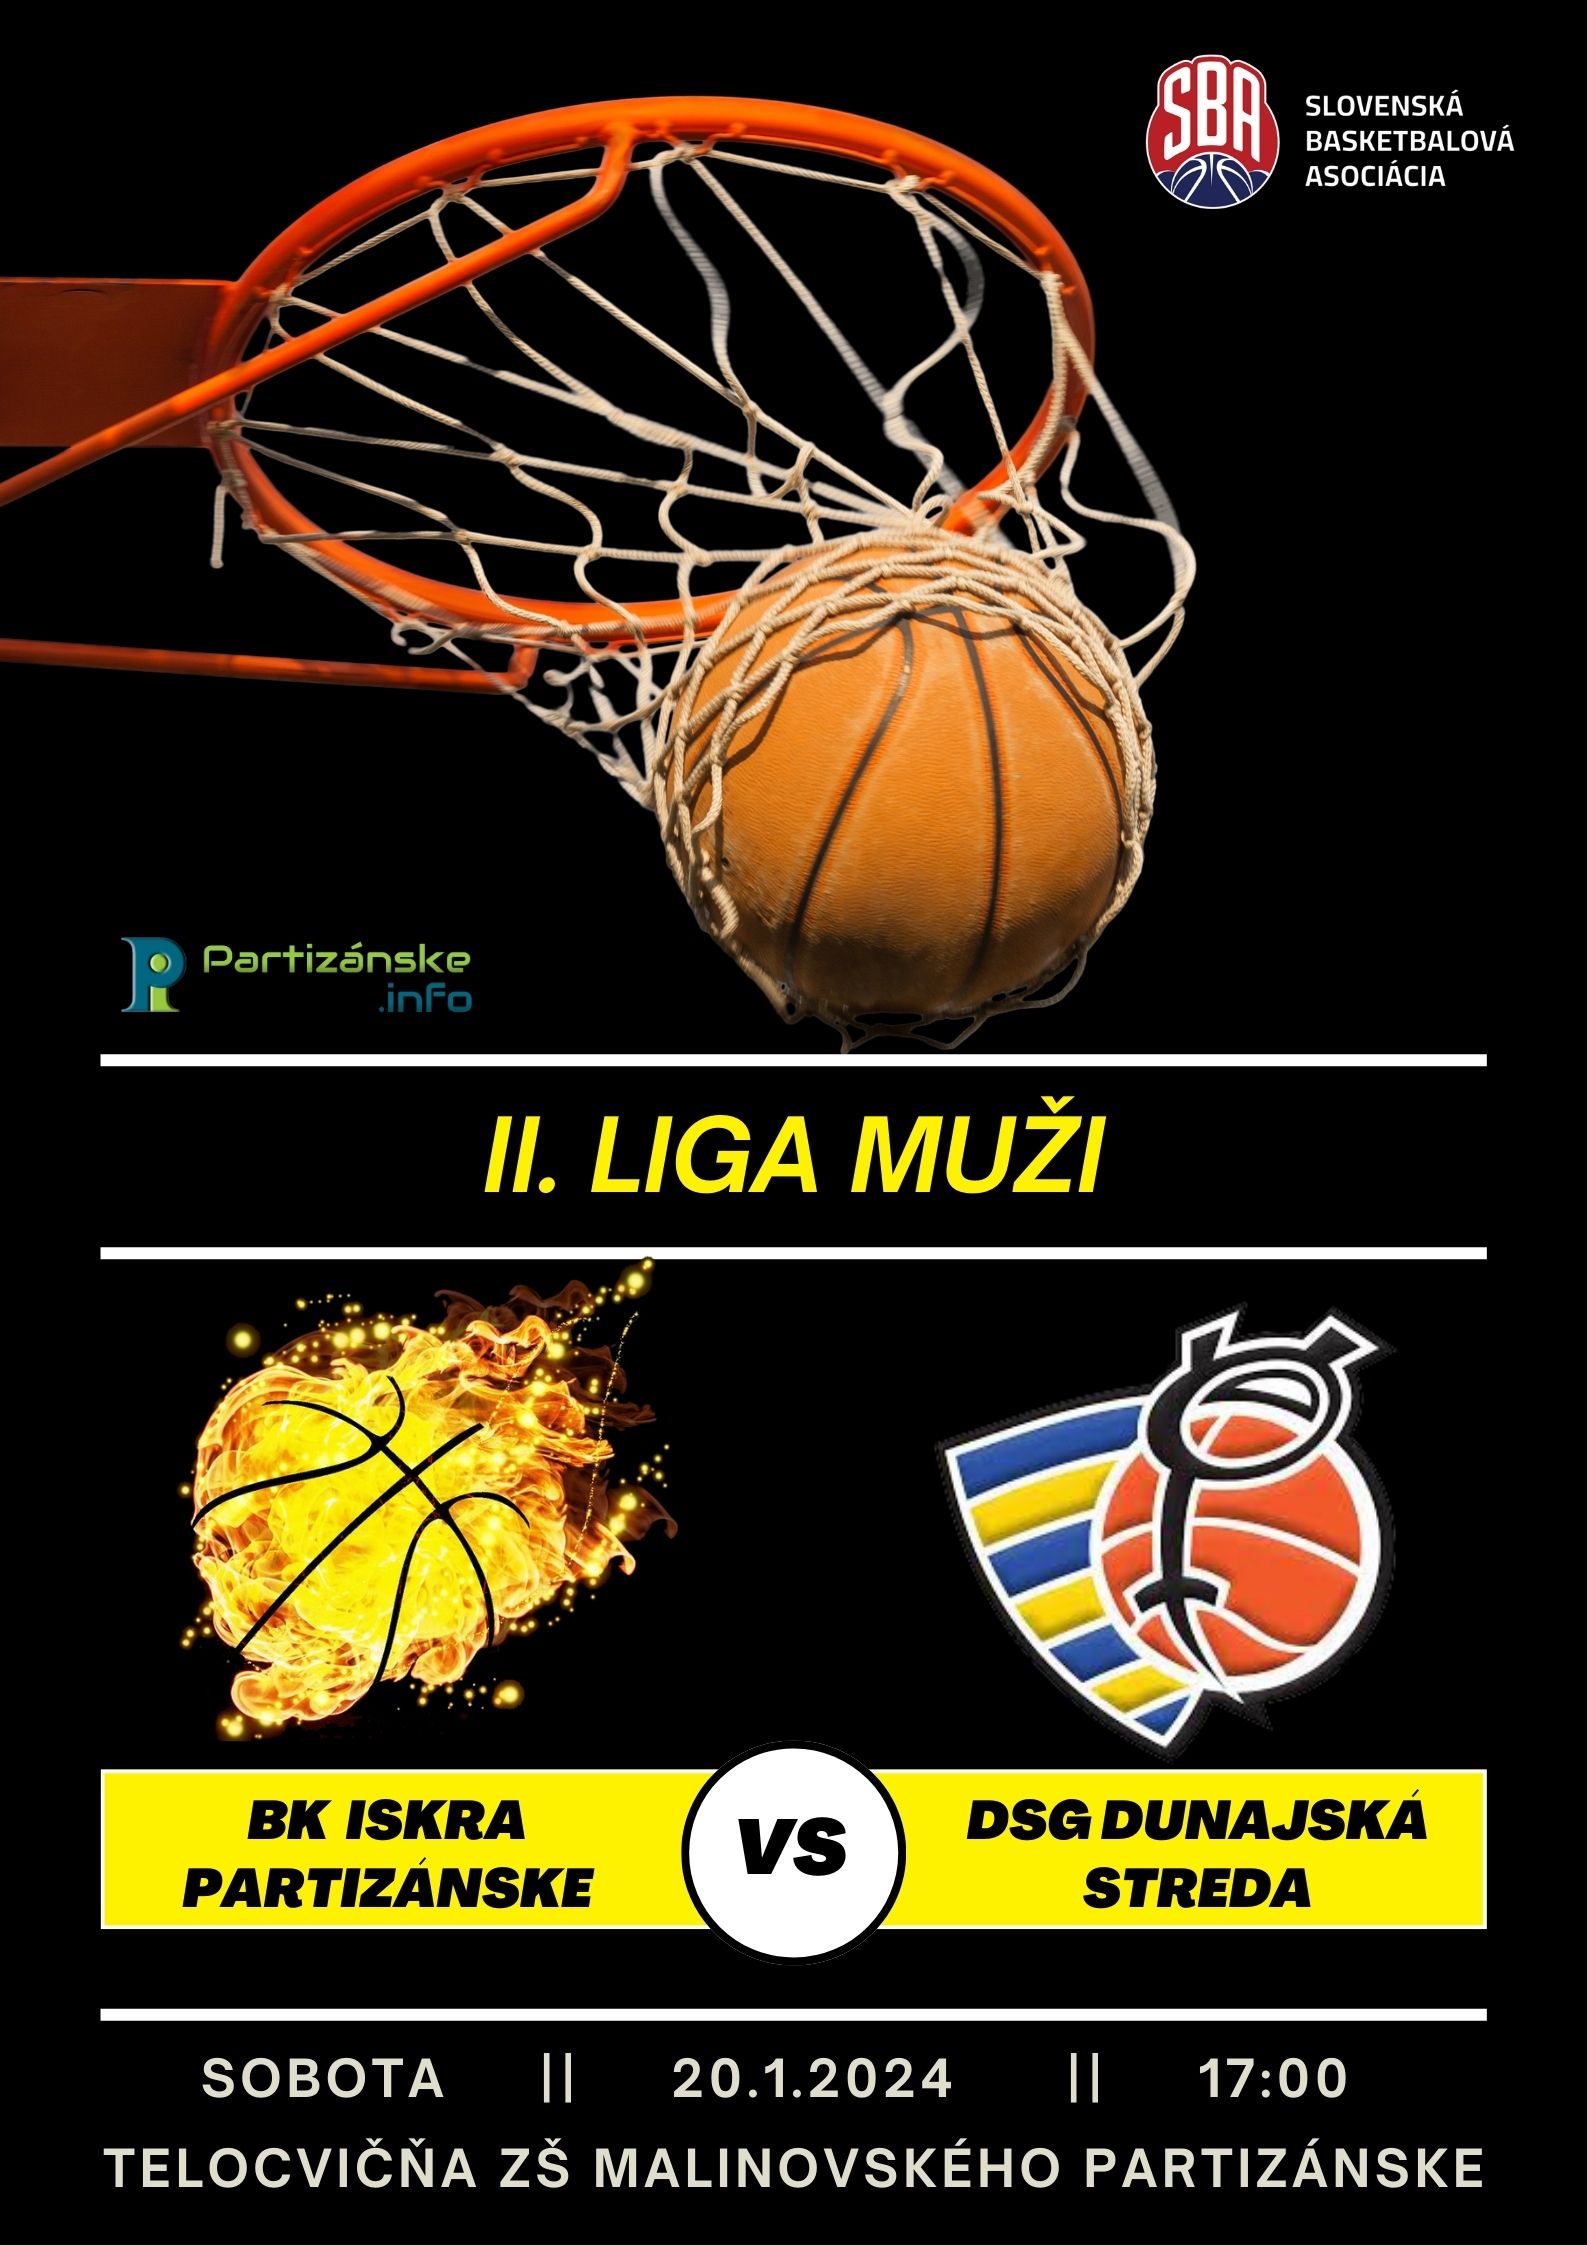 Basketbal: Partizánske - Dunajská streda @ telocvičňa ZŠ